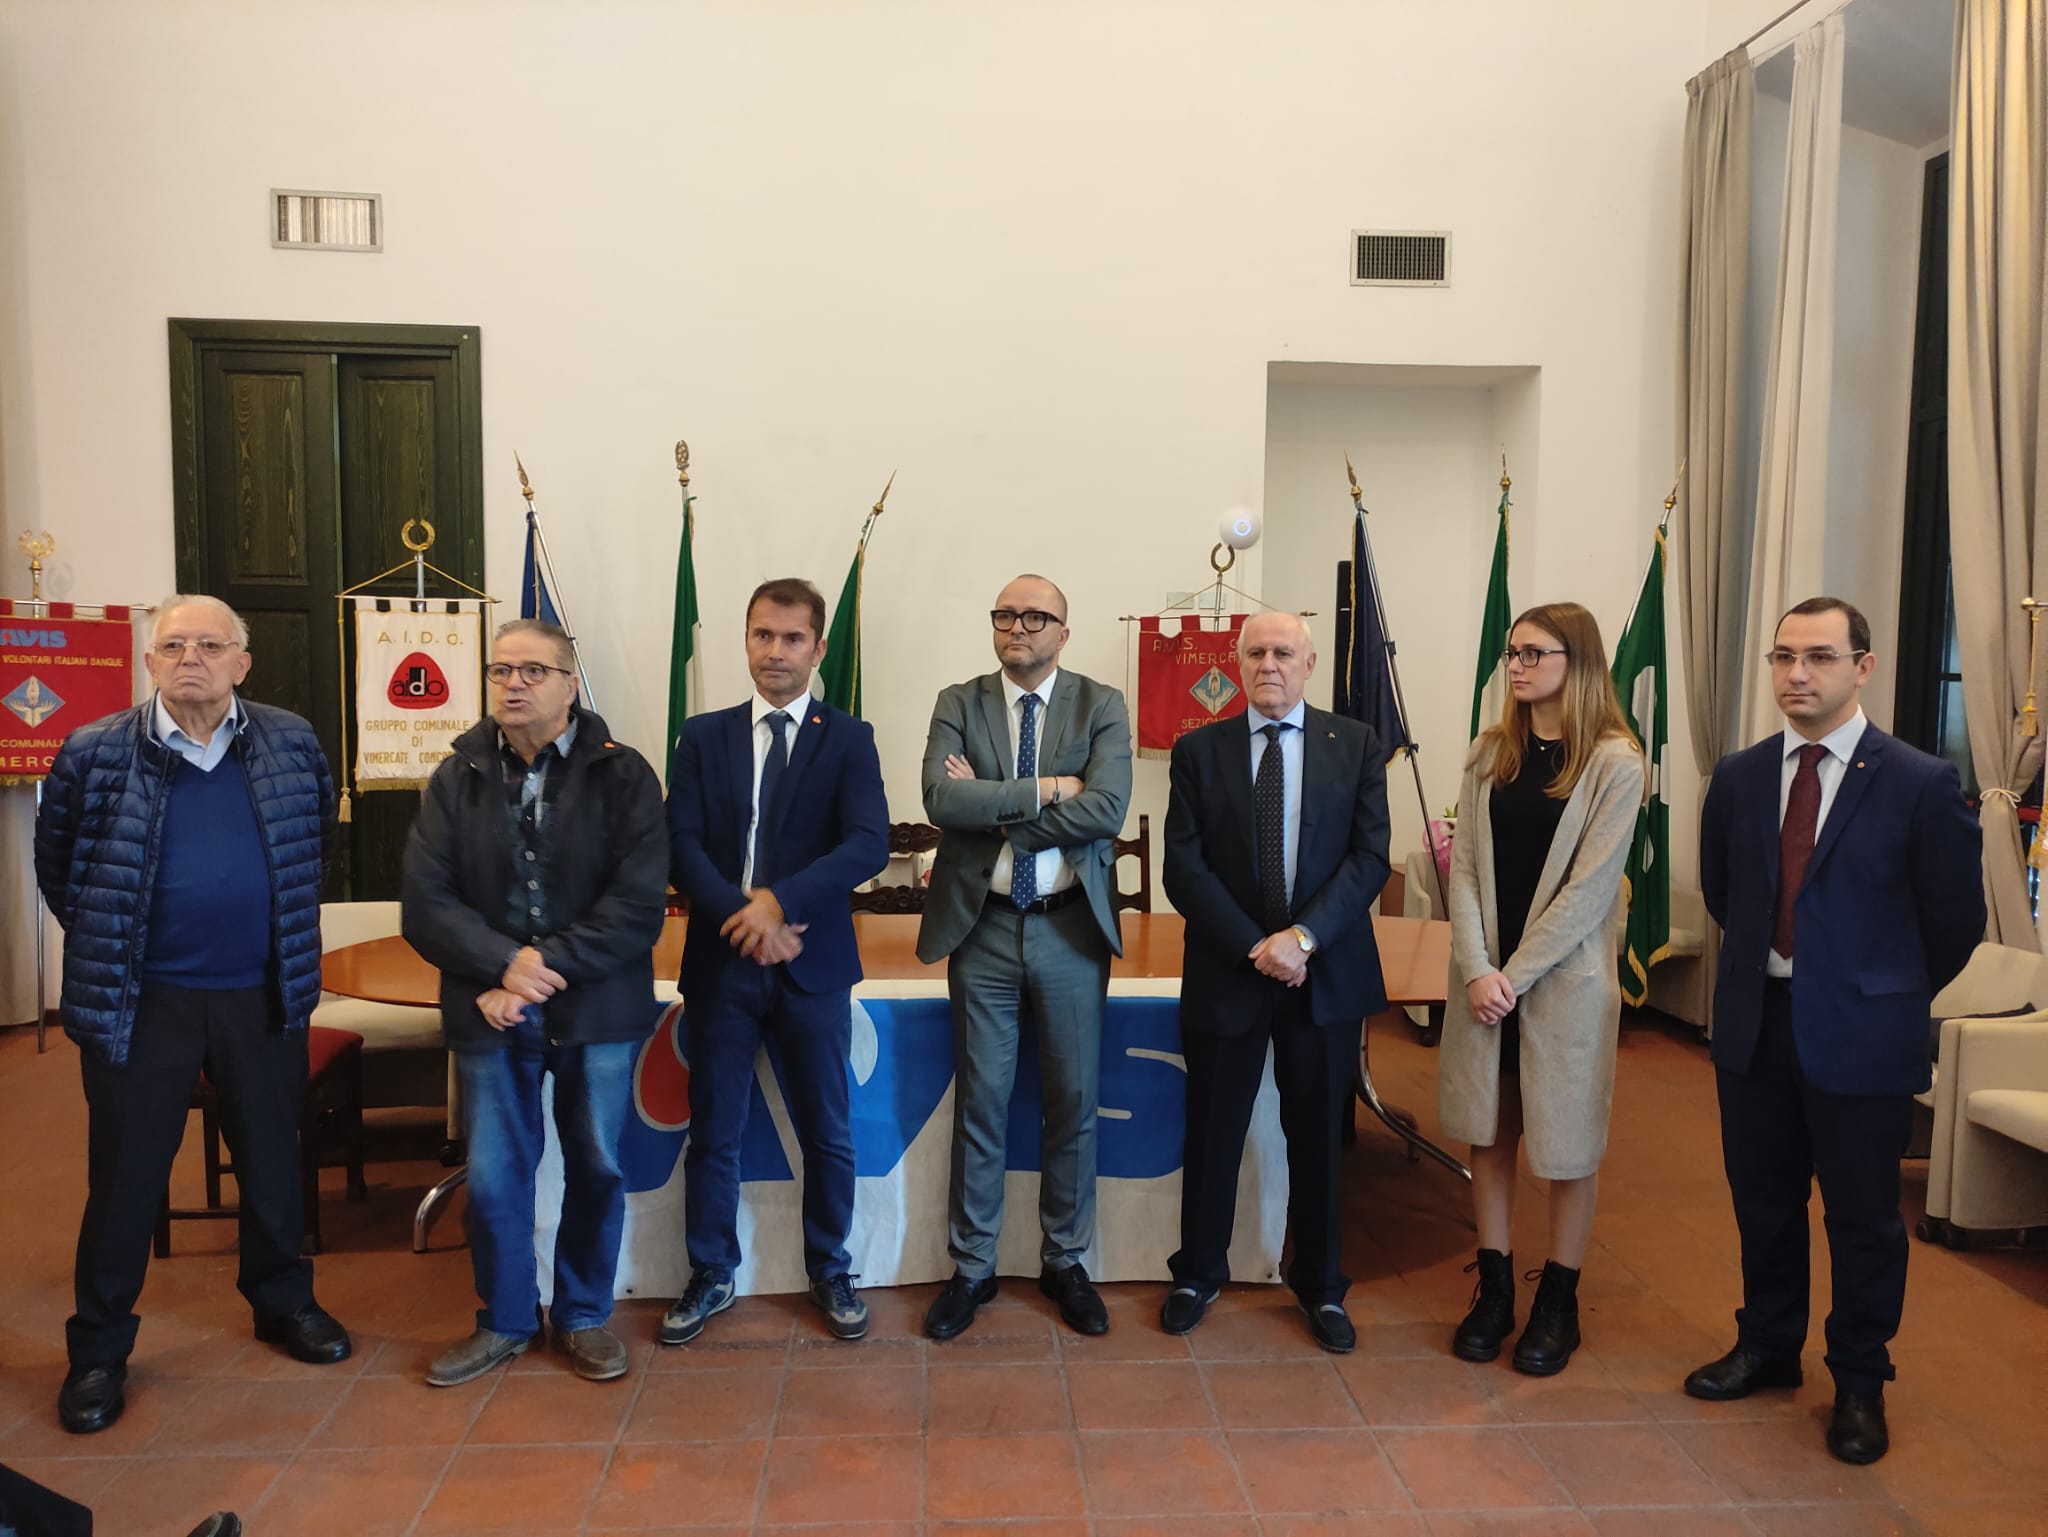 Concorezzo premiazioni donatori Avis  saluto delle istituzione tra cui sindaco Mauro Capitanio